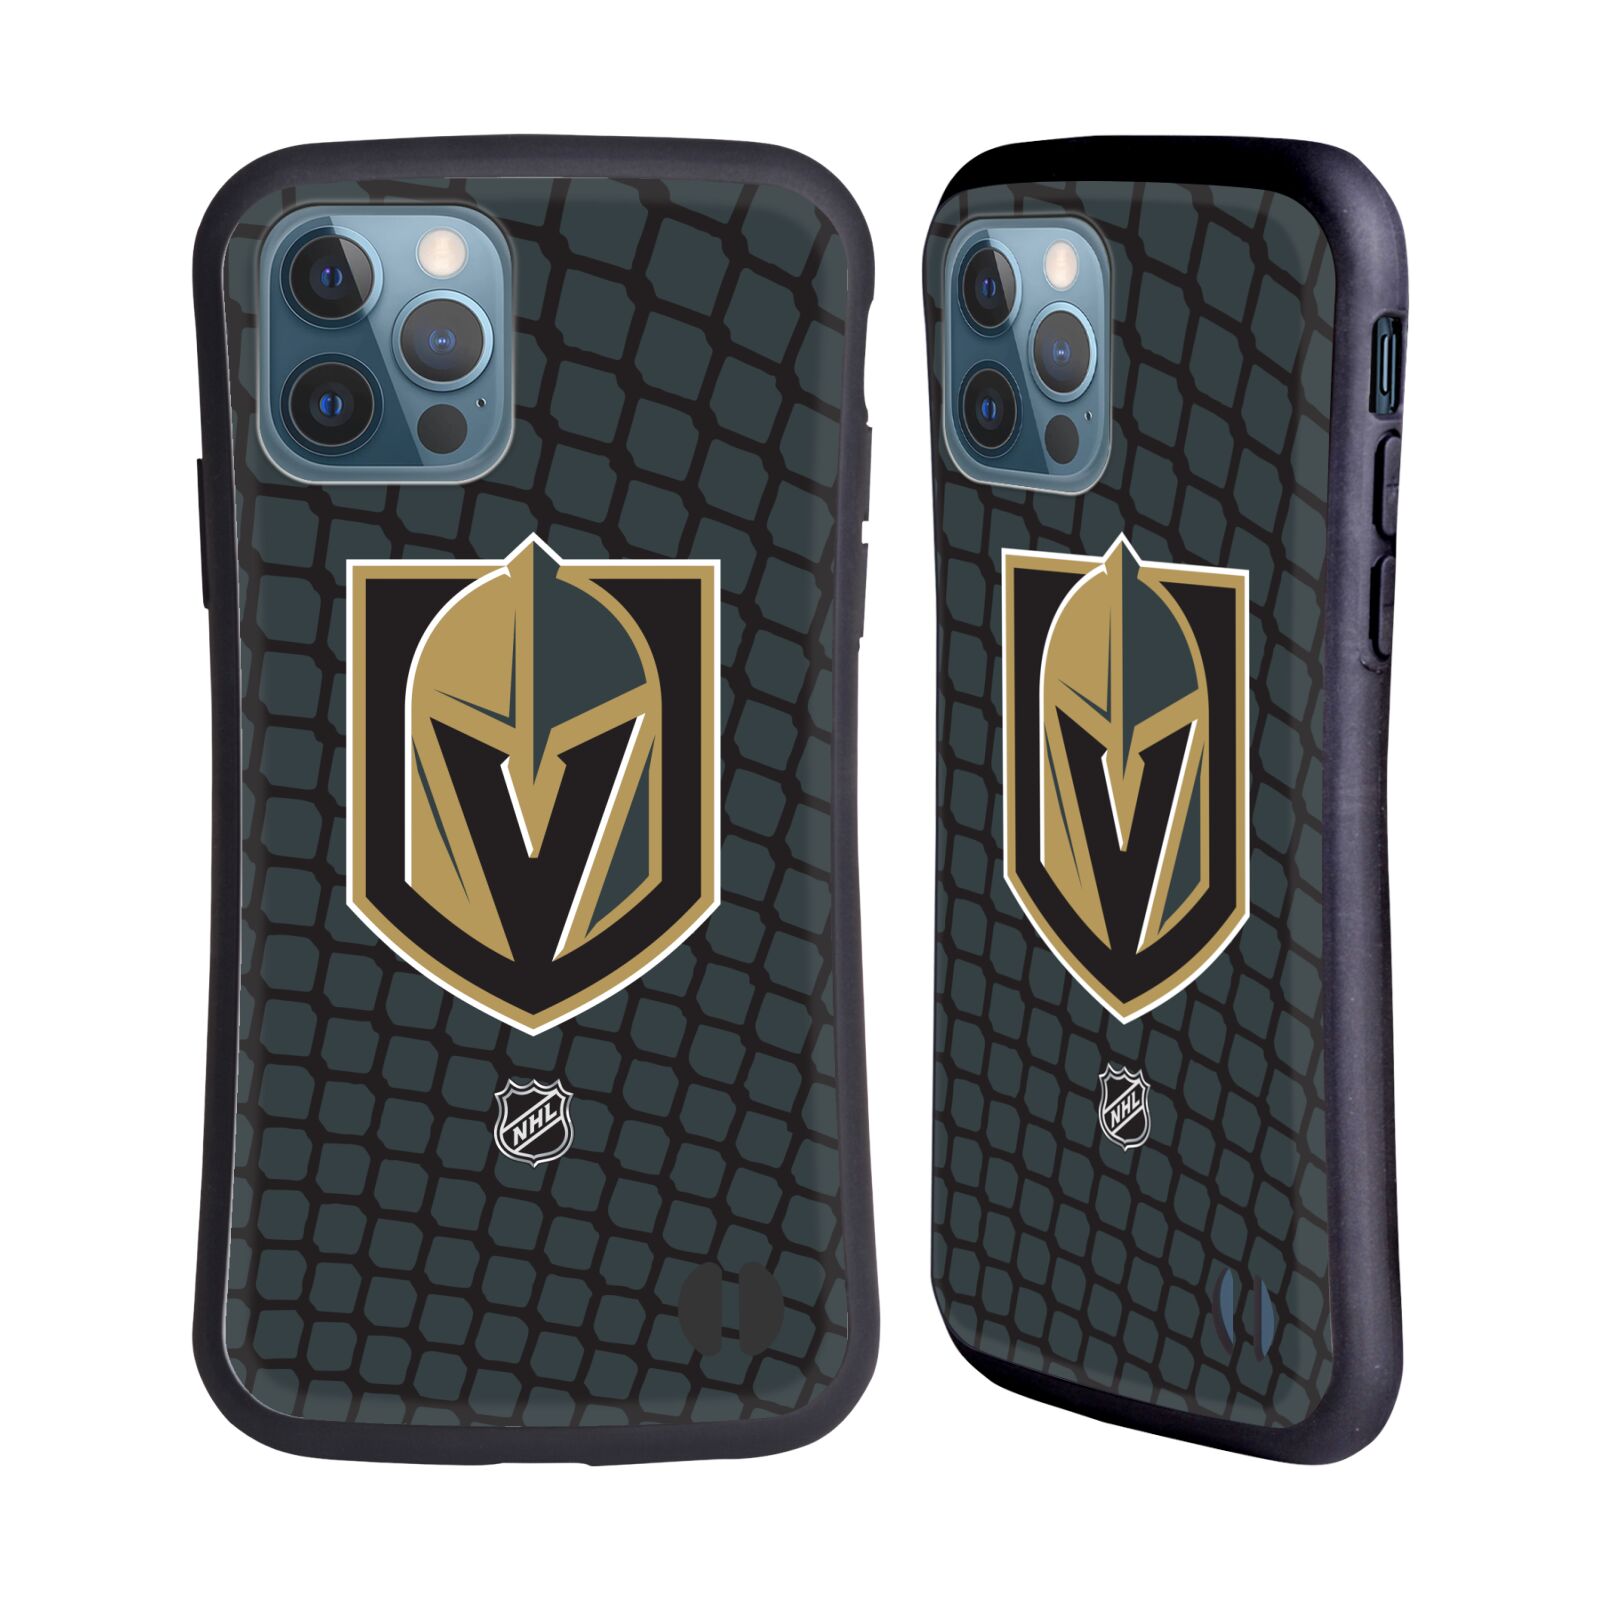 Obal na mobil Apple iPhone 12 / 12 PRO - HEAD CASE - NHL - Branková síť Las Vegas Golden Knights